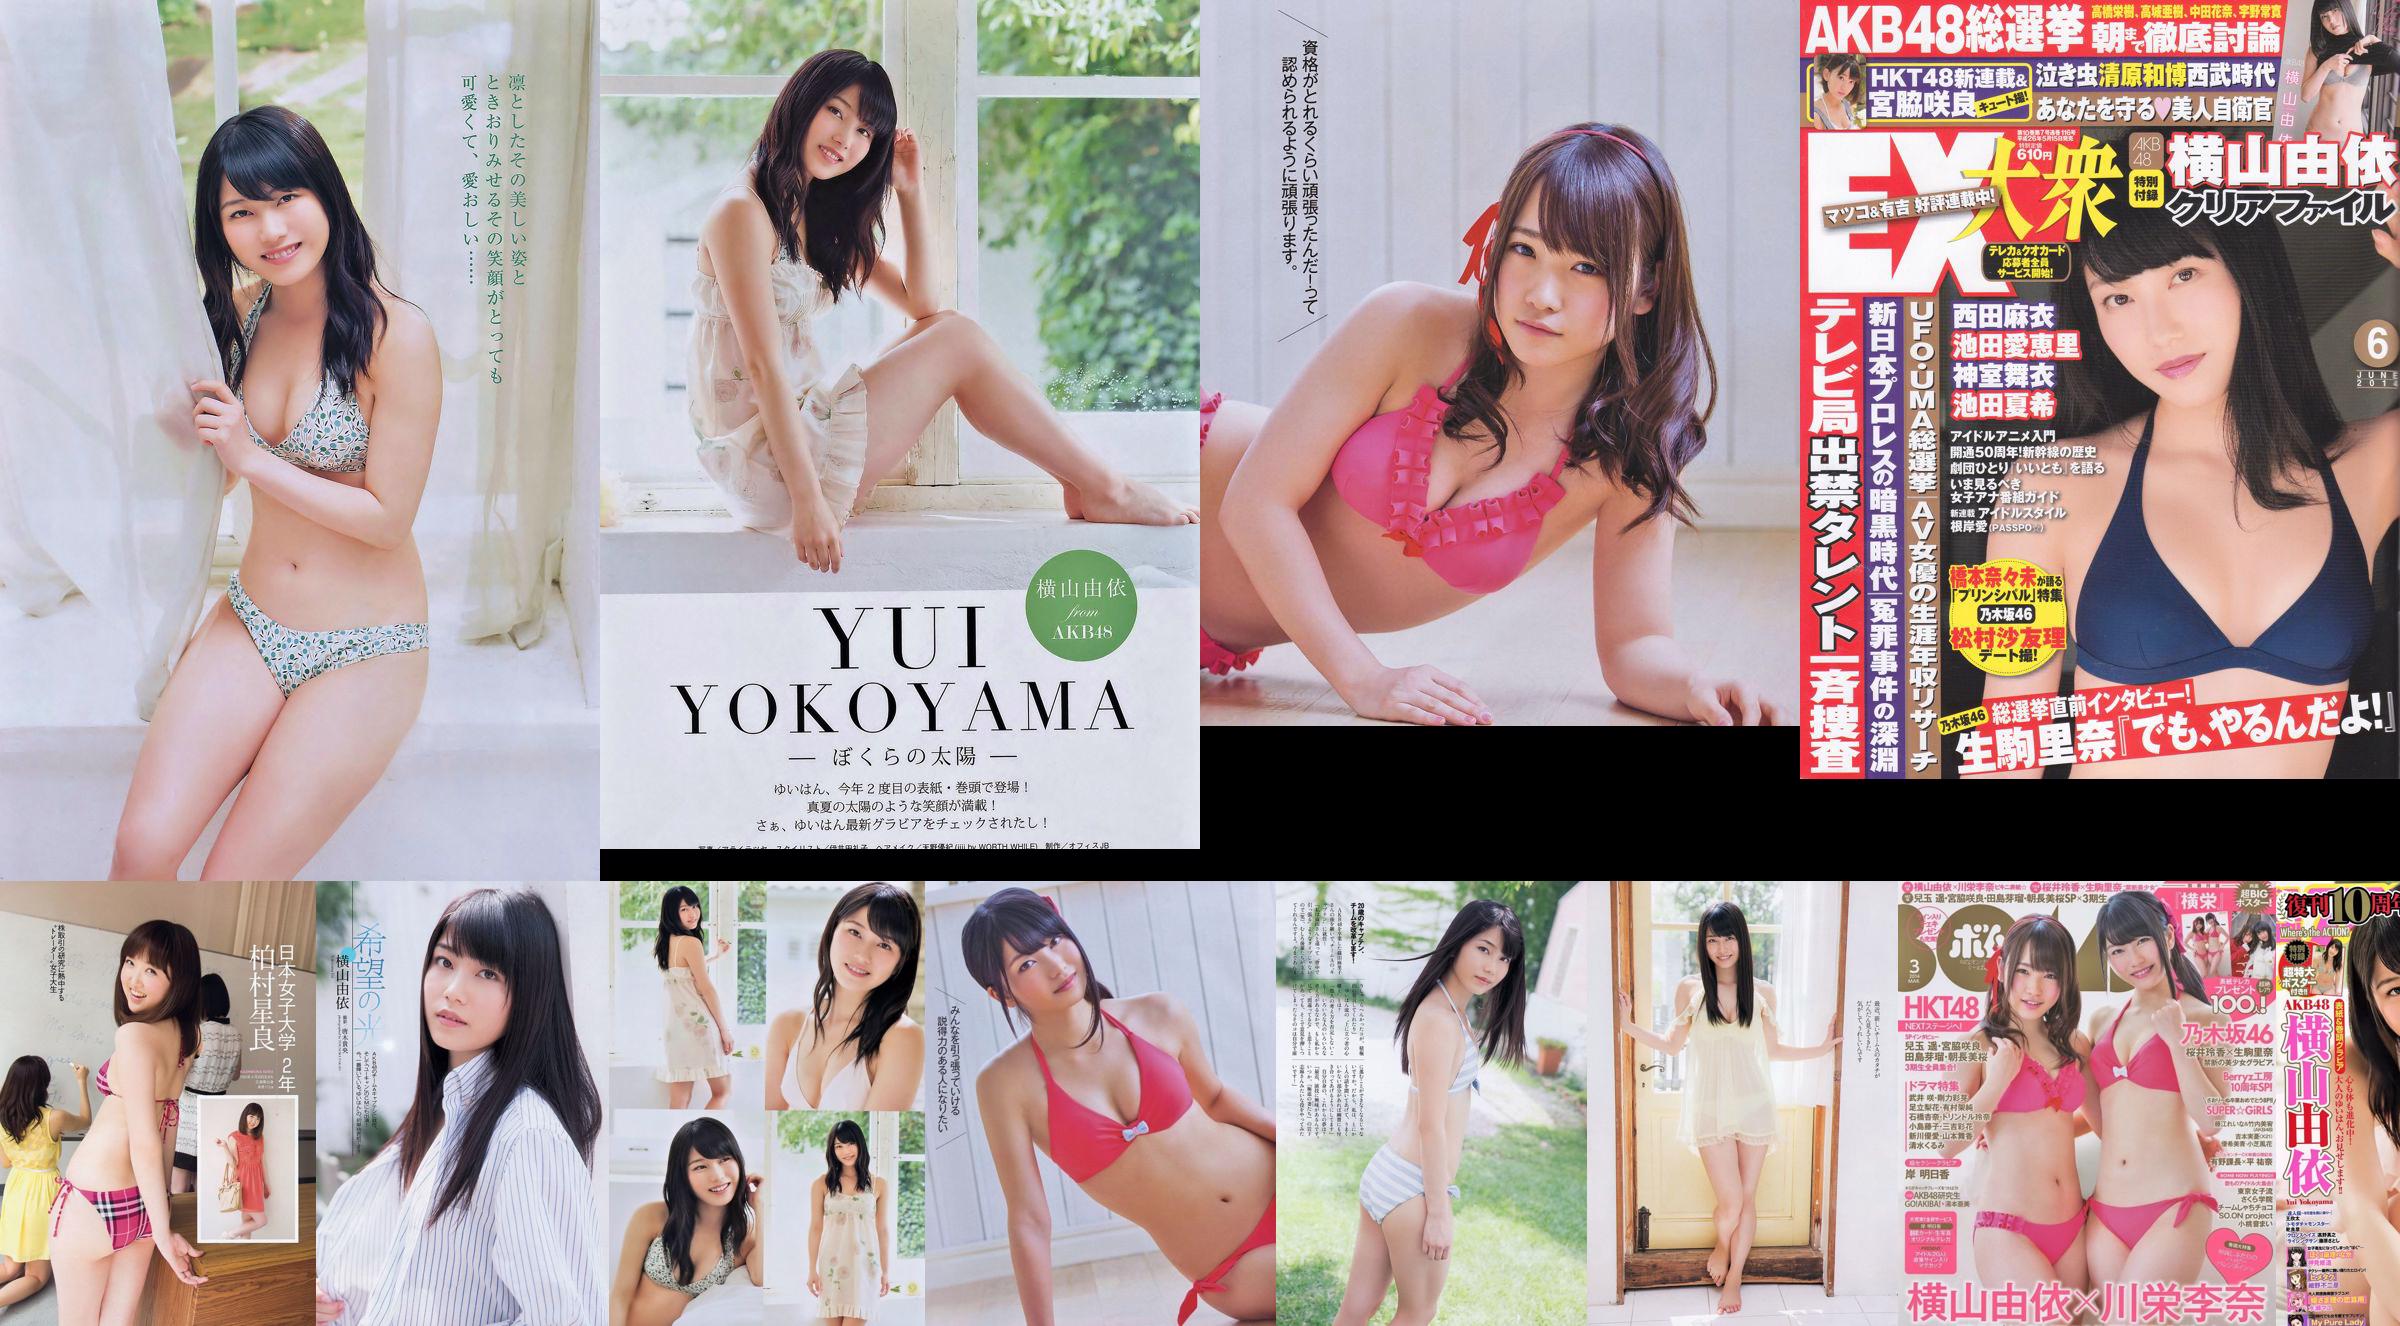 [EX Taishu] Yokoyama Yui, Miyawaki Sakura, Matsumura Sa Yuri 2014 No.06 Photo Magazine No.080d93 Pagina 16